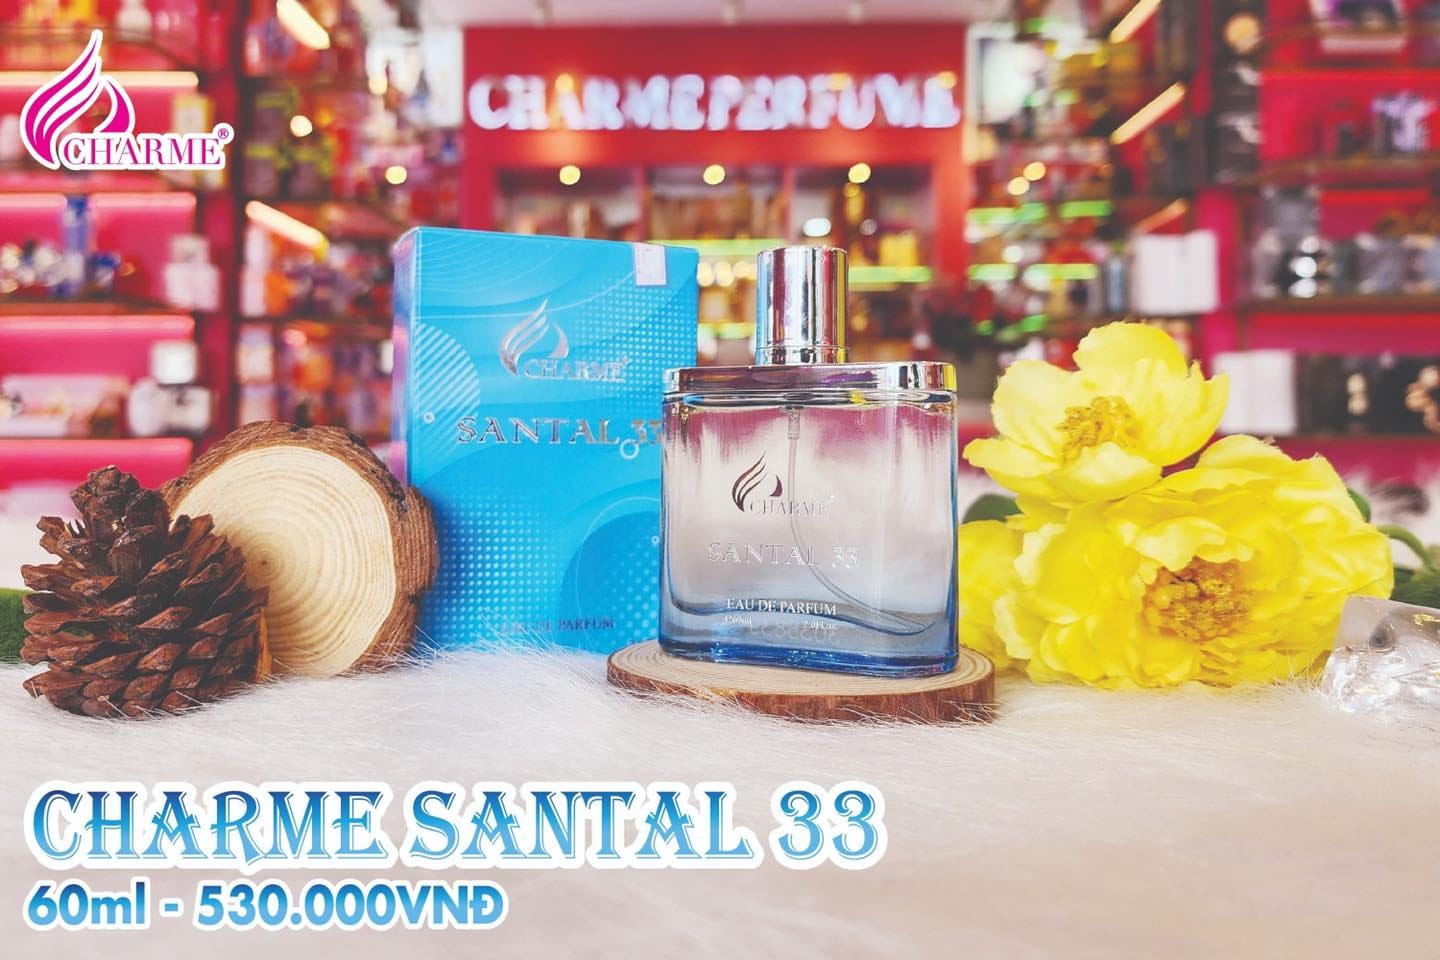 Mùi hương Charme Santal33 mang lại nét đặc trưng nổi bật